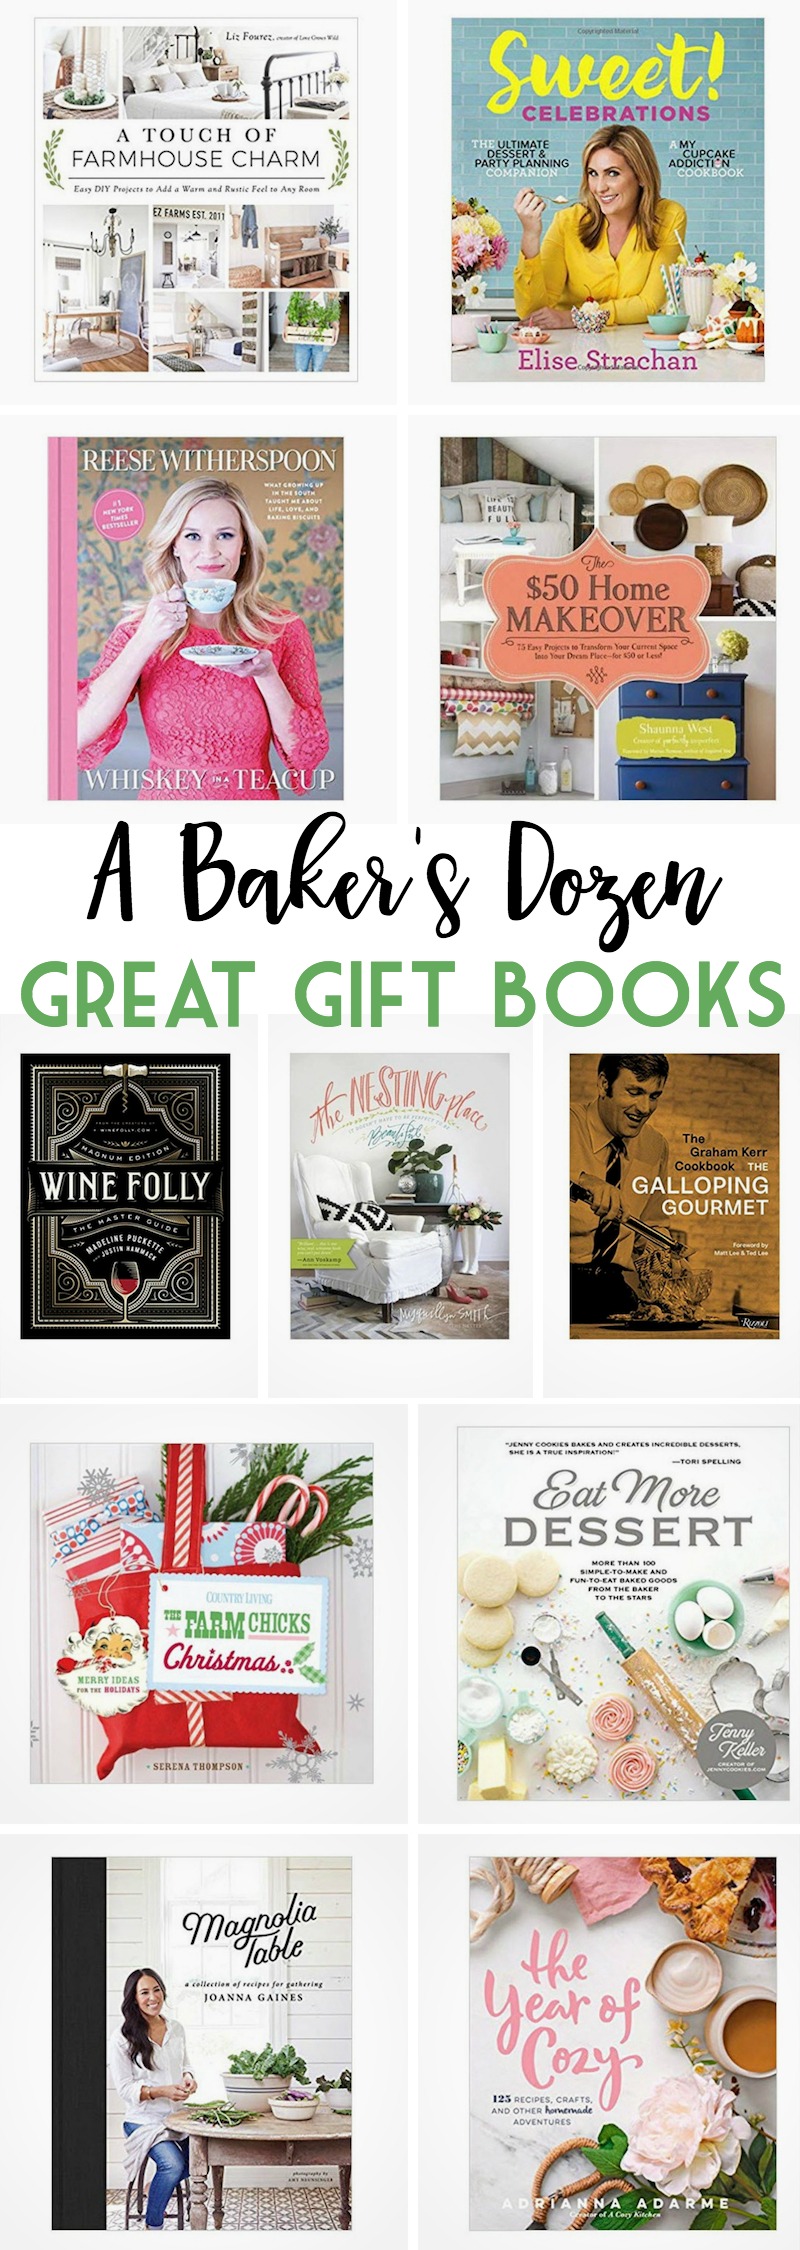 A Baker's Dozen Great Gift Books 